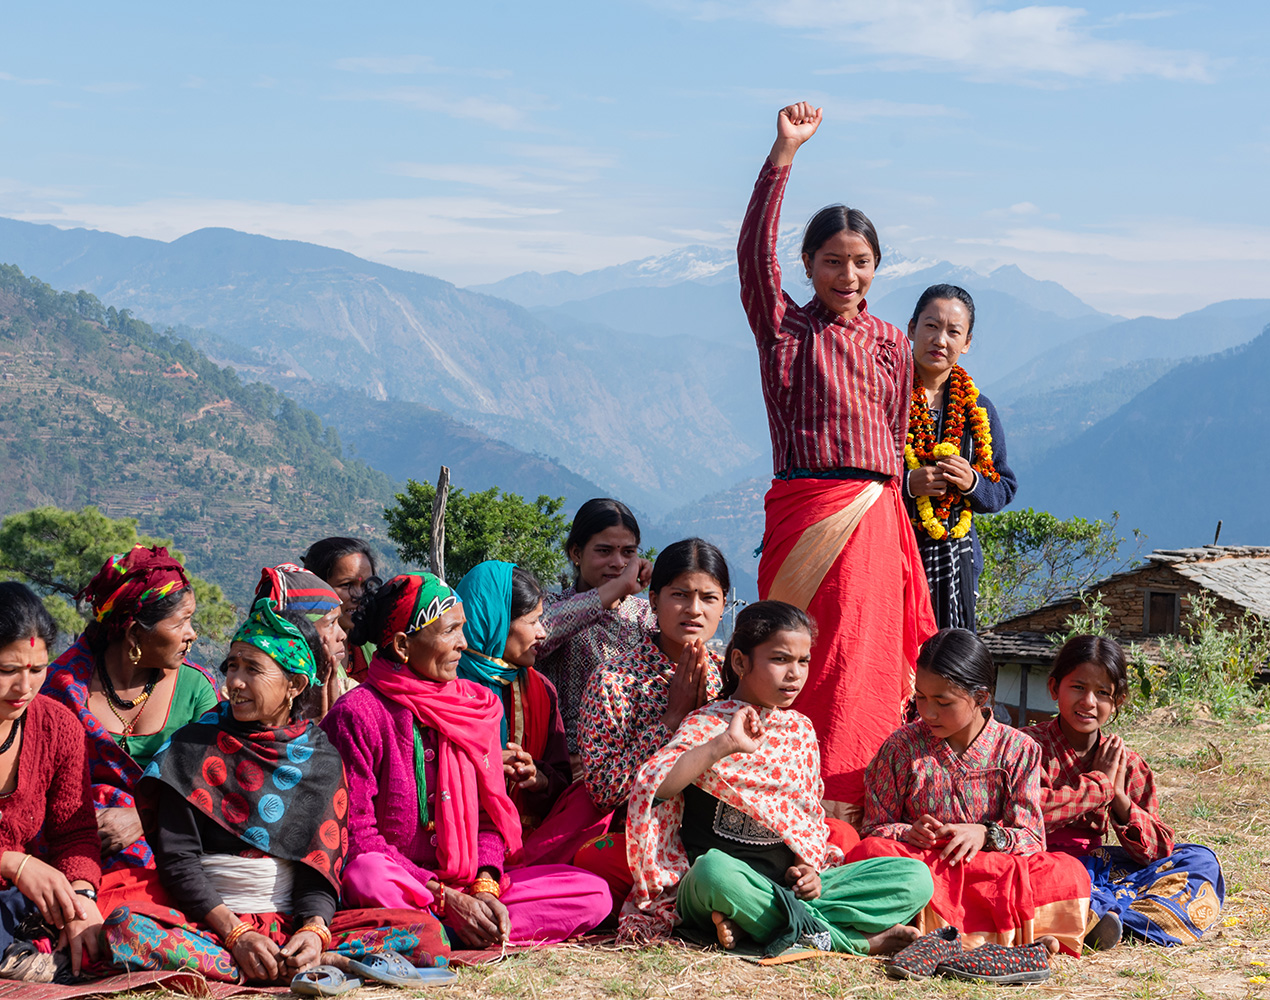 Ryhmä nuoria istuu maassa, yksi nuori seisoo ja on nostanut kätensä pystyyn. Taustalla näkyy Nepalin lumihuippuisia vuoria.